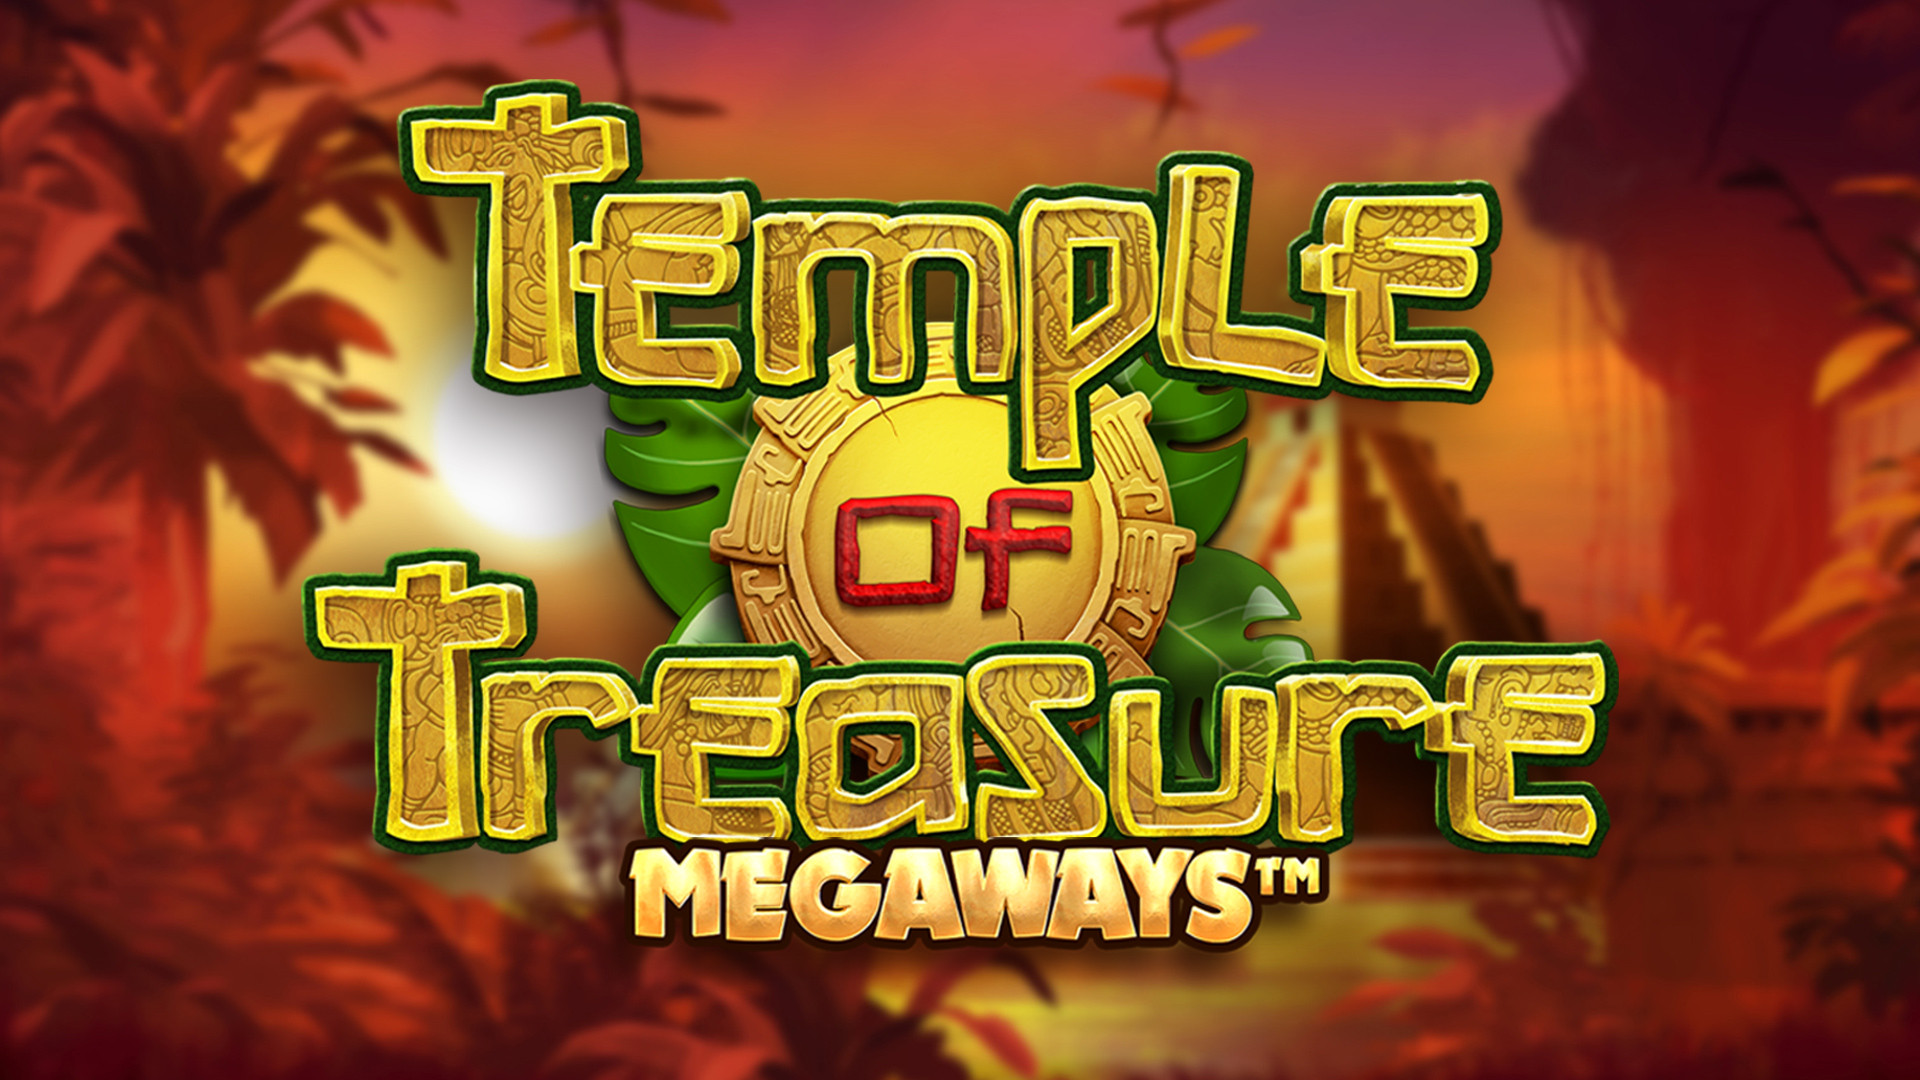 Temple of Treasure MEGAWAYS